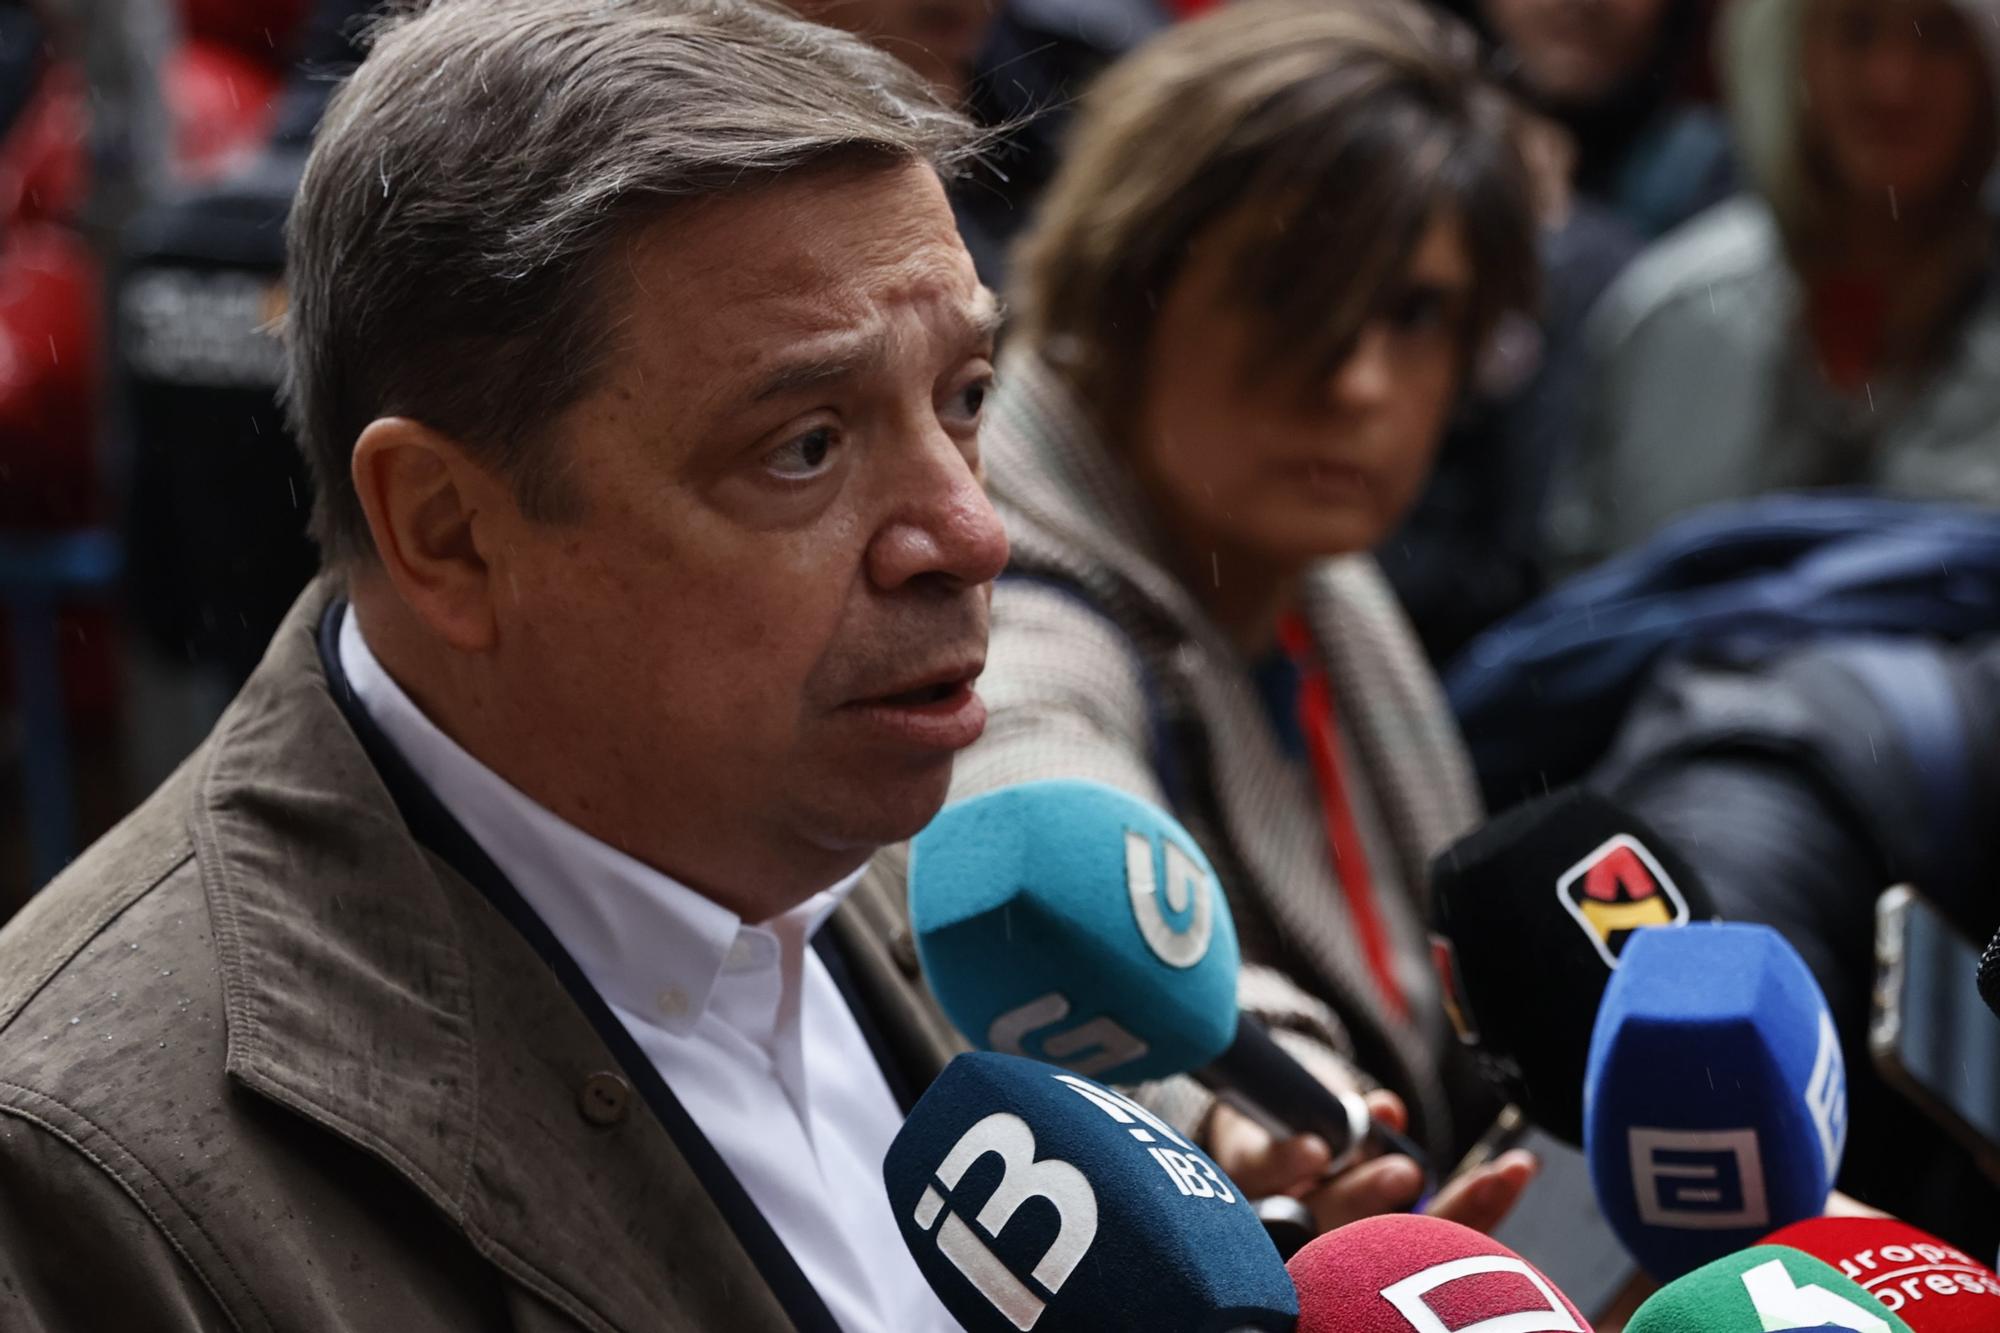 Dirigentes socialistas trasladan su apoyo a Sánchez a su llegada a Ferraz